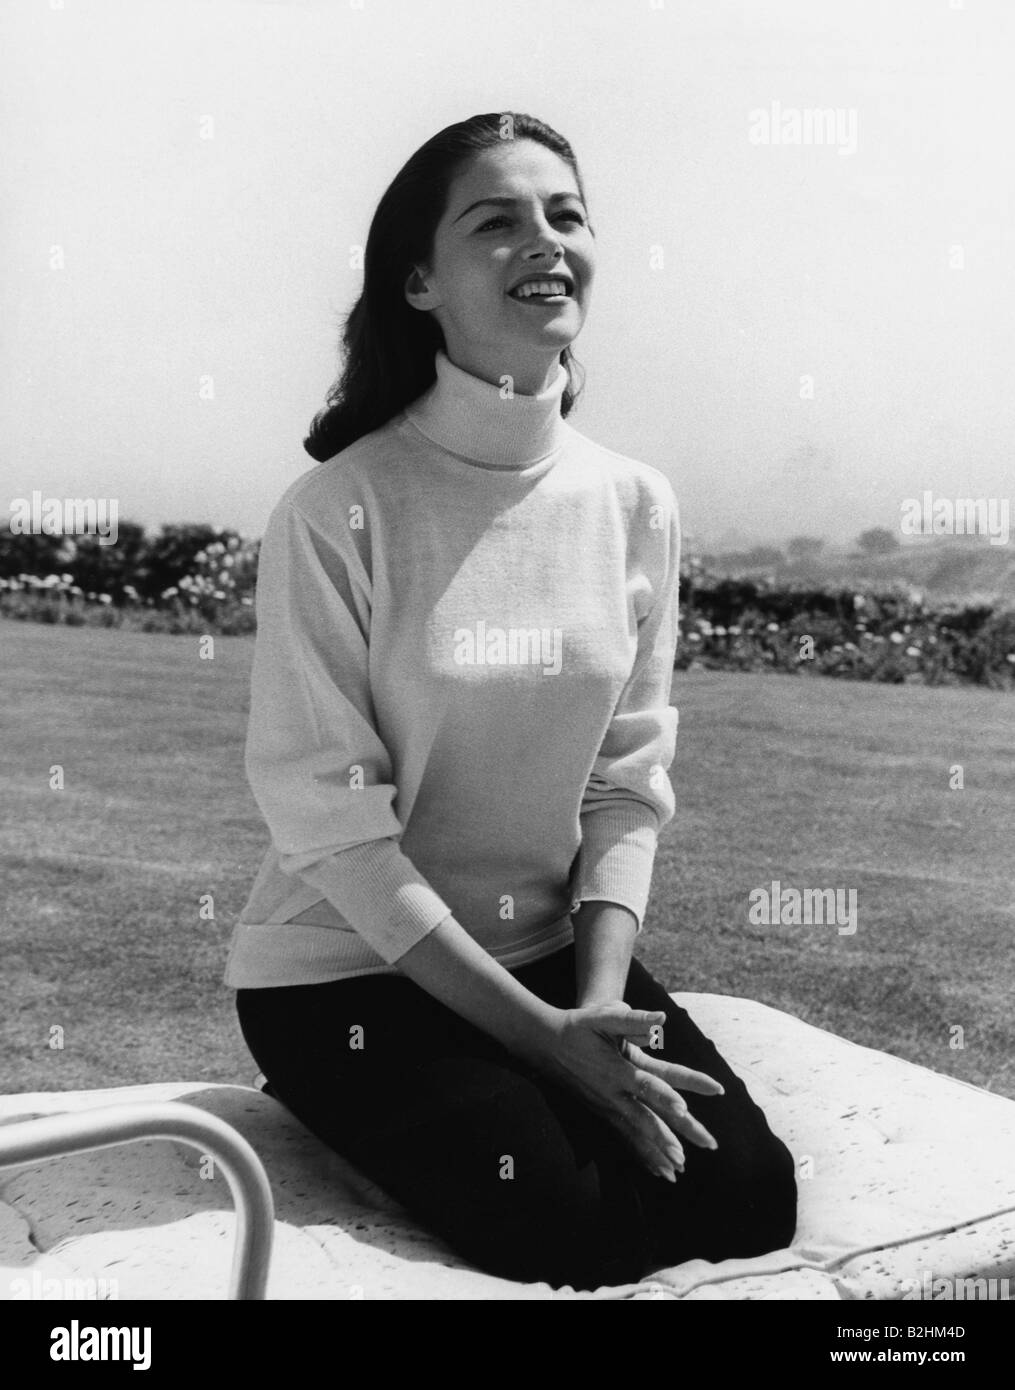 Angeli, Pier, 19.6.1932 - 10.9.1971, attrice italiana, mezza lunghezza, 1950s, Foto Stock